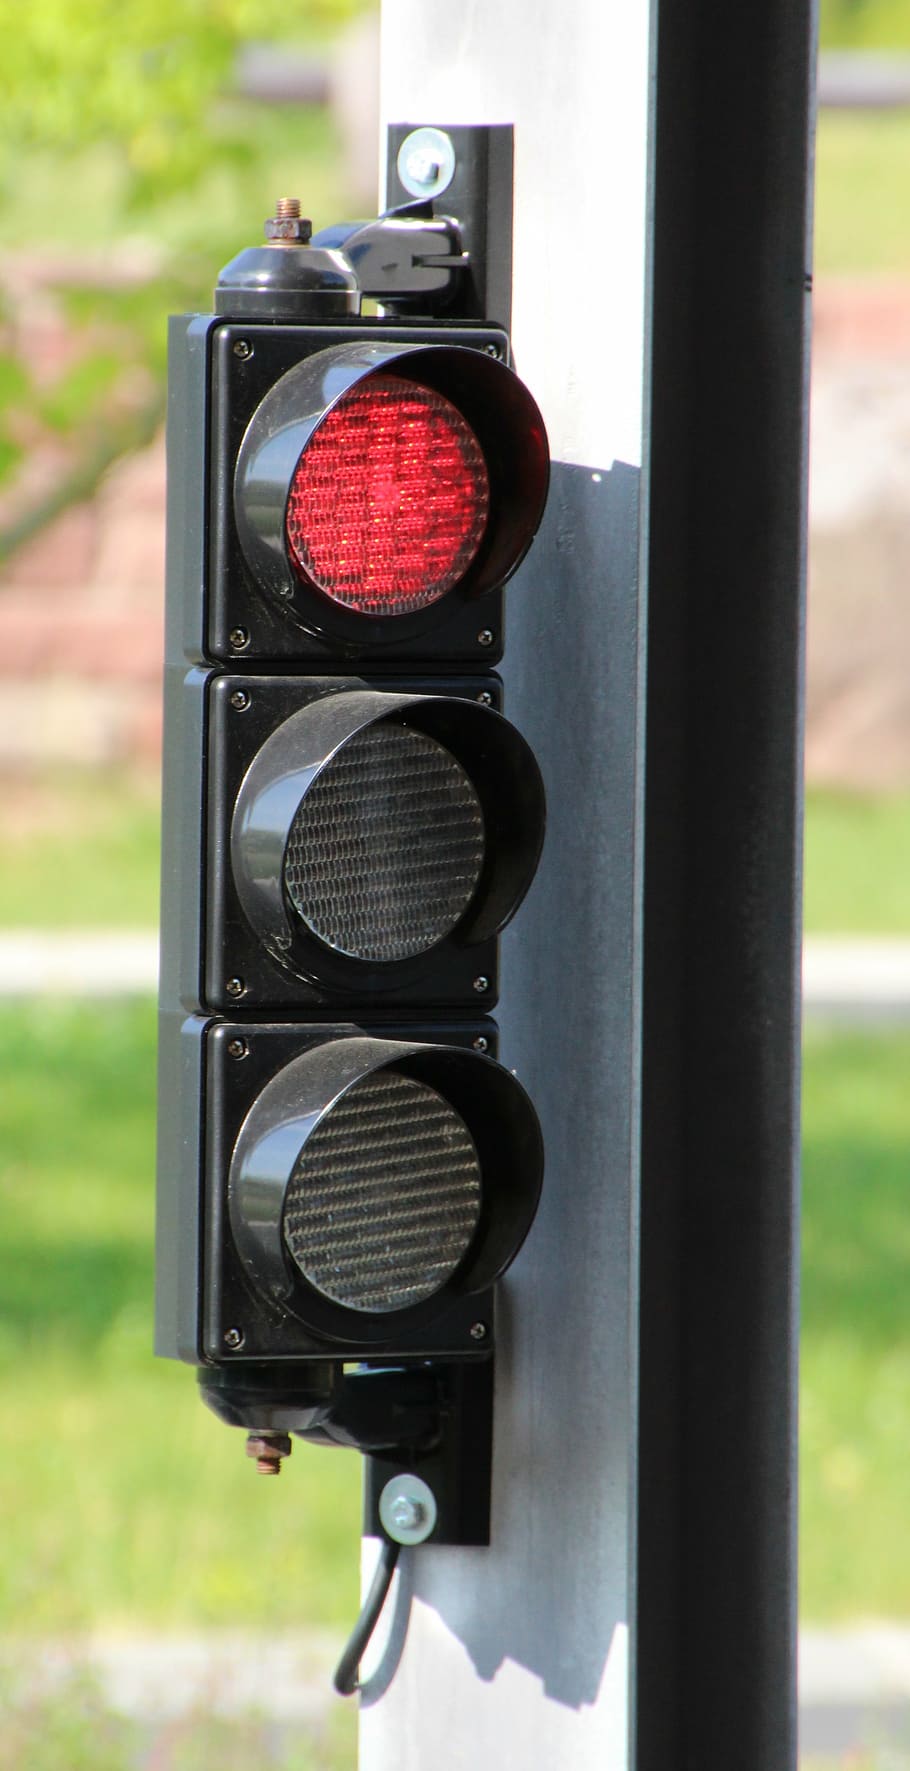 semáforos, vermelho, sinal luminoso, parar, sinais de semáforo, sinal de trânsito, estrada, semáforos vermelhos, semáforo, ninguém